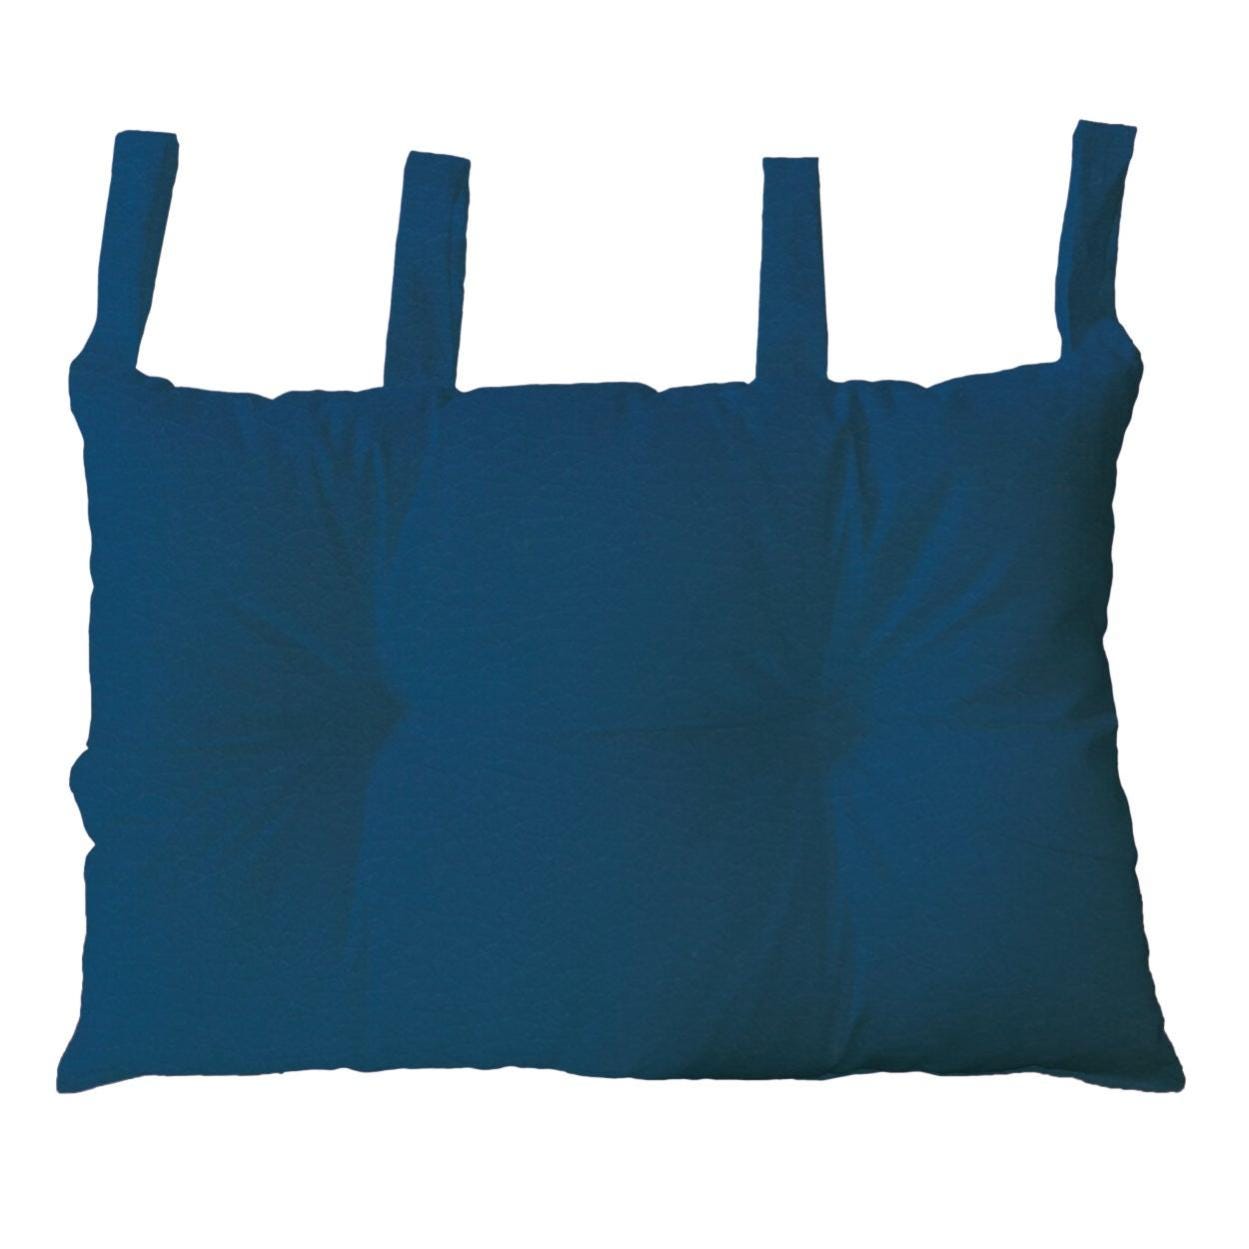 Cuscino per testata letto bea colore blu marino